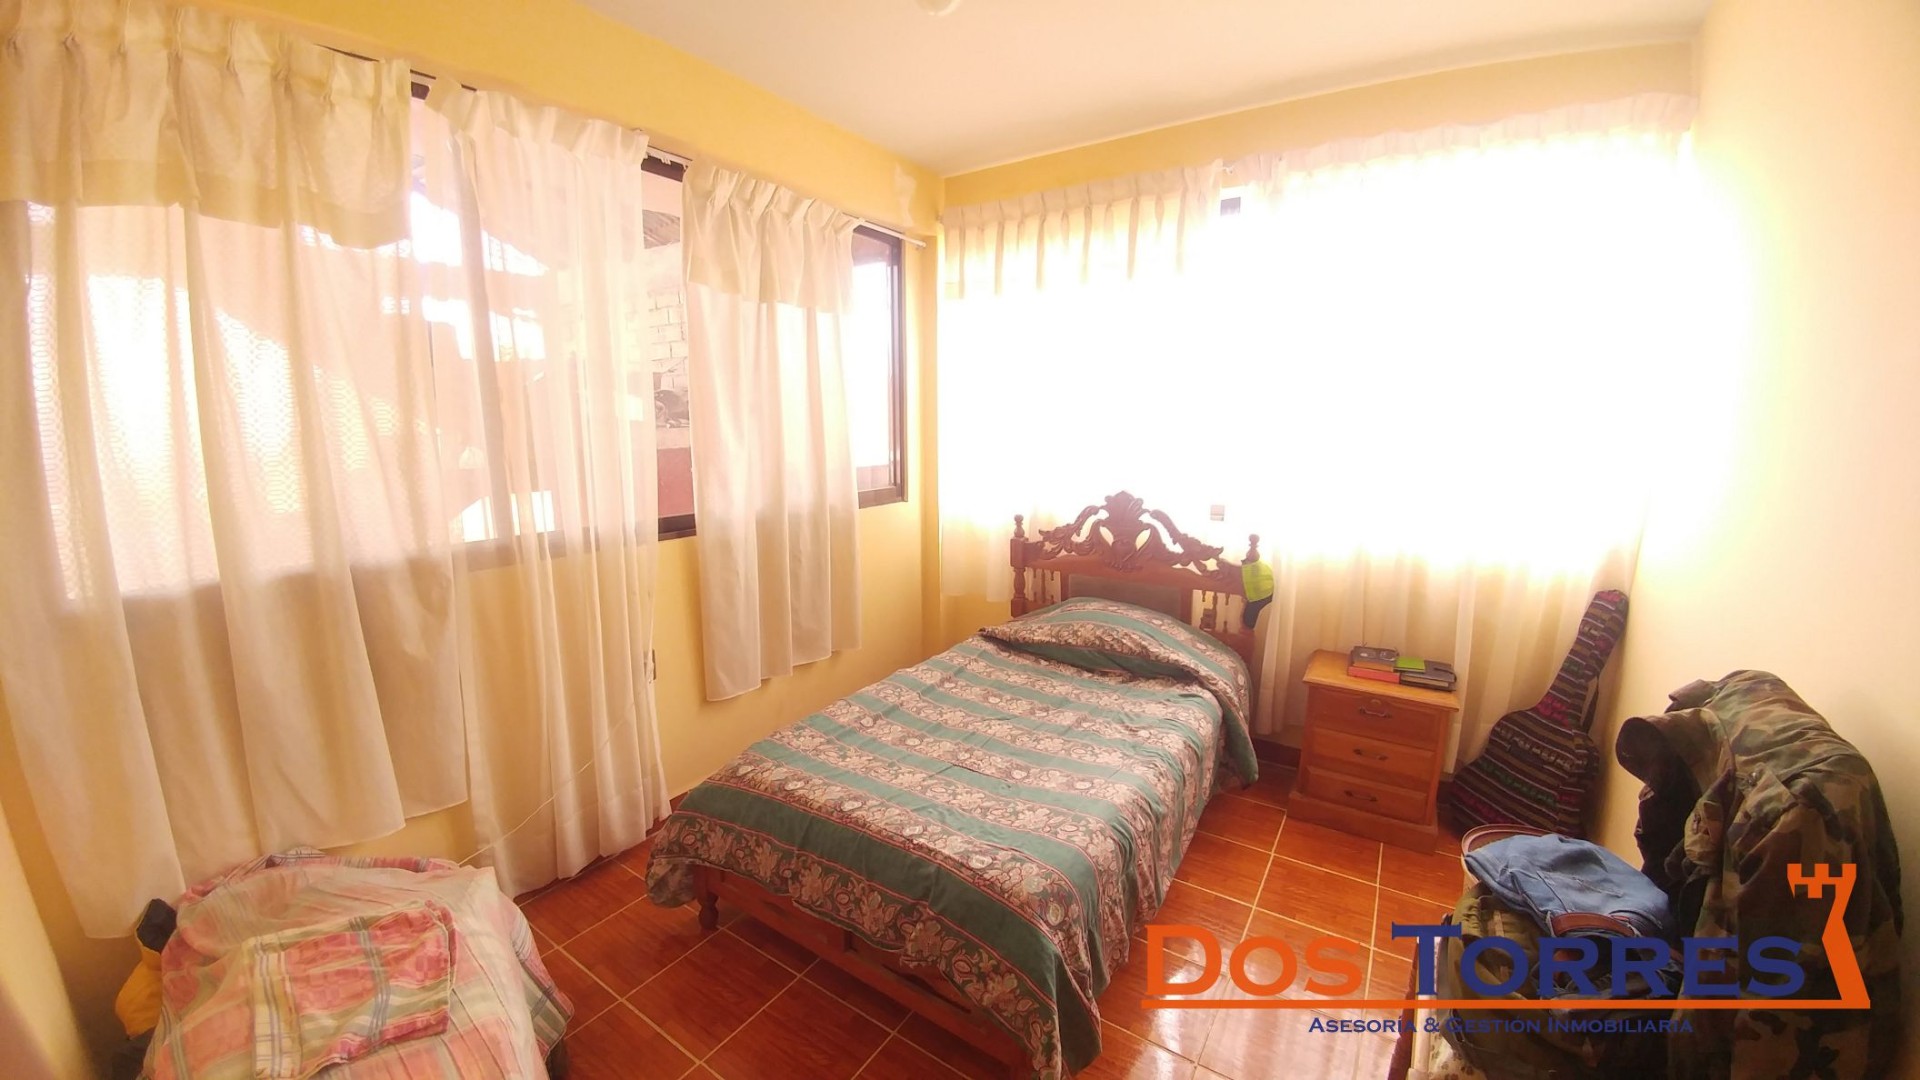 Casa en Venta137.000$us Chillimarca casa en venta con 5 Dormitorios - Ref. 910 Foto 4